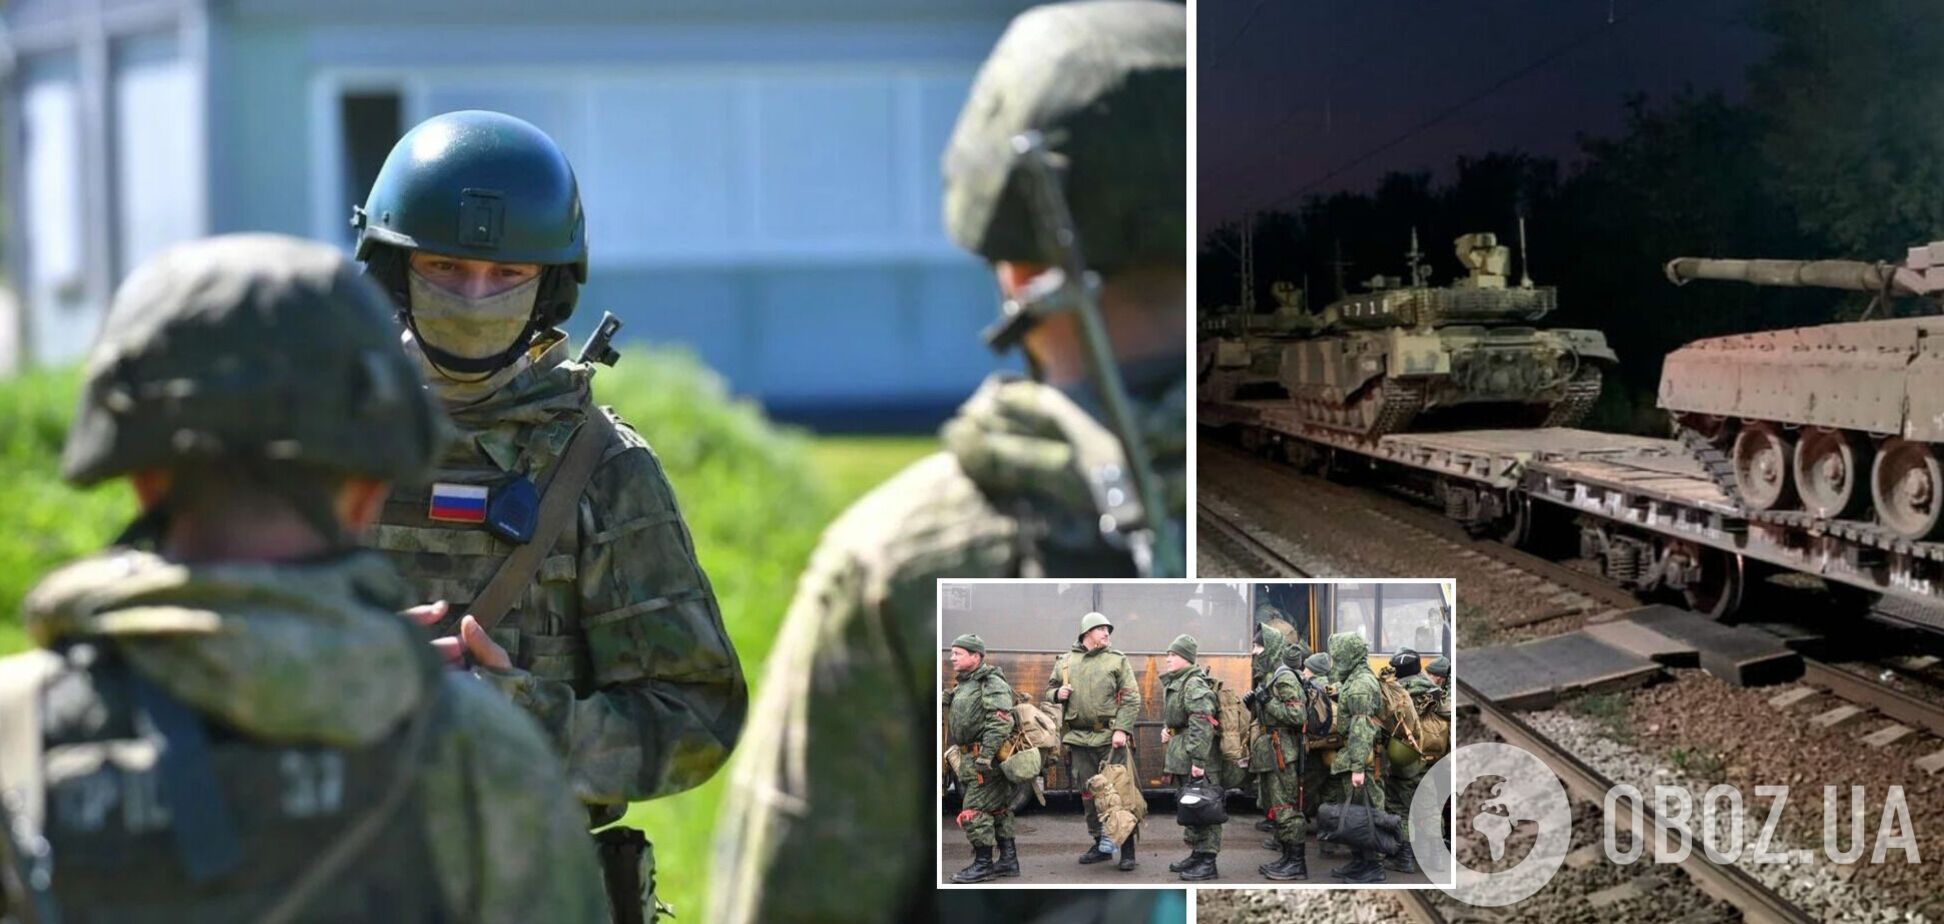 Формируется по 'чеченской' модели: зачем на самом деле Путину 3-й армейский корпус